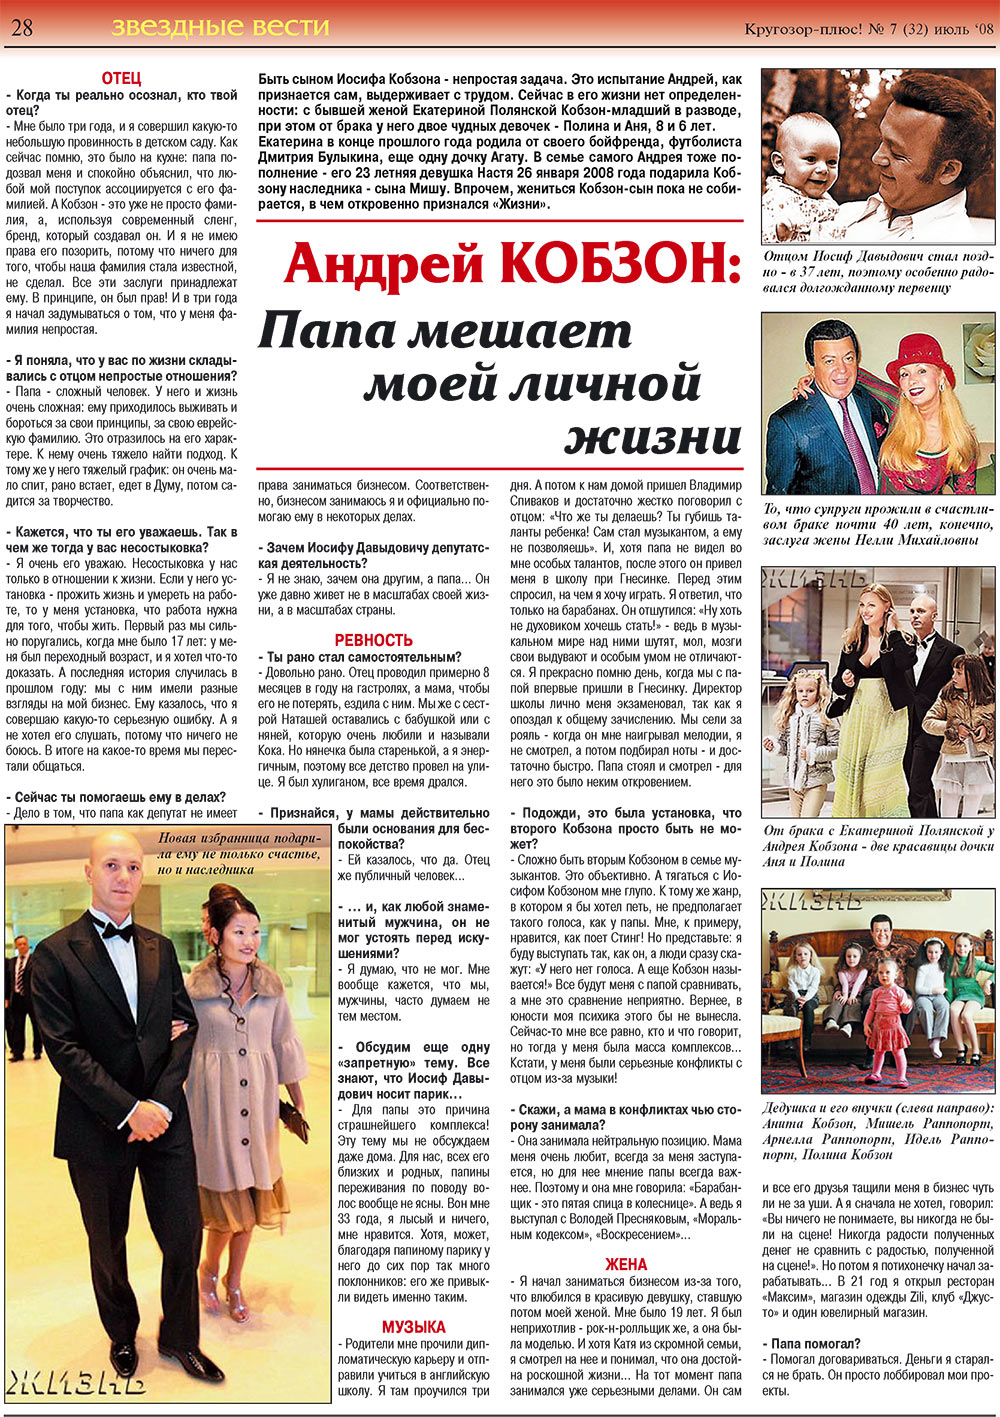 Кругозор плюс!, газета. 2008 №7 стр.28